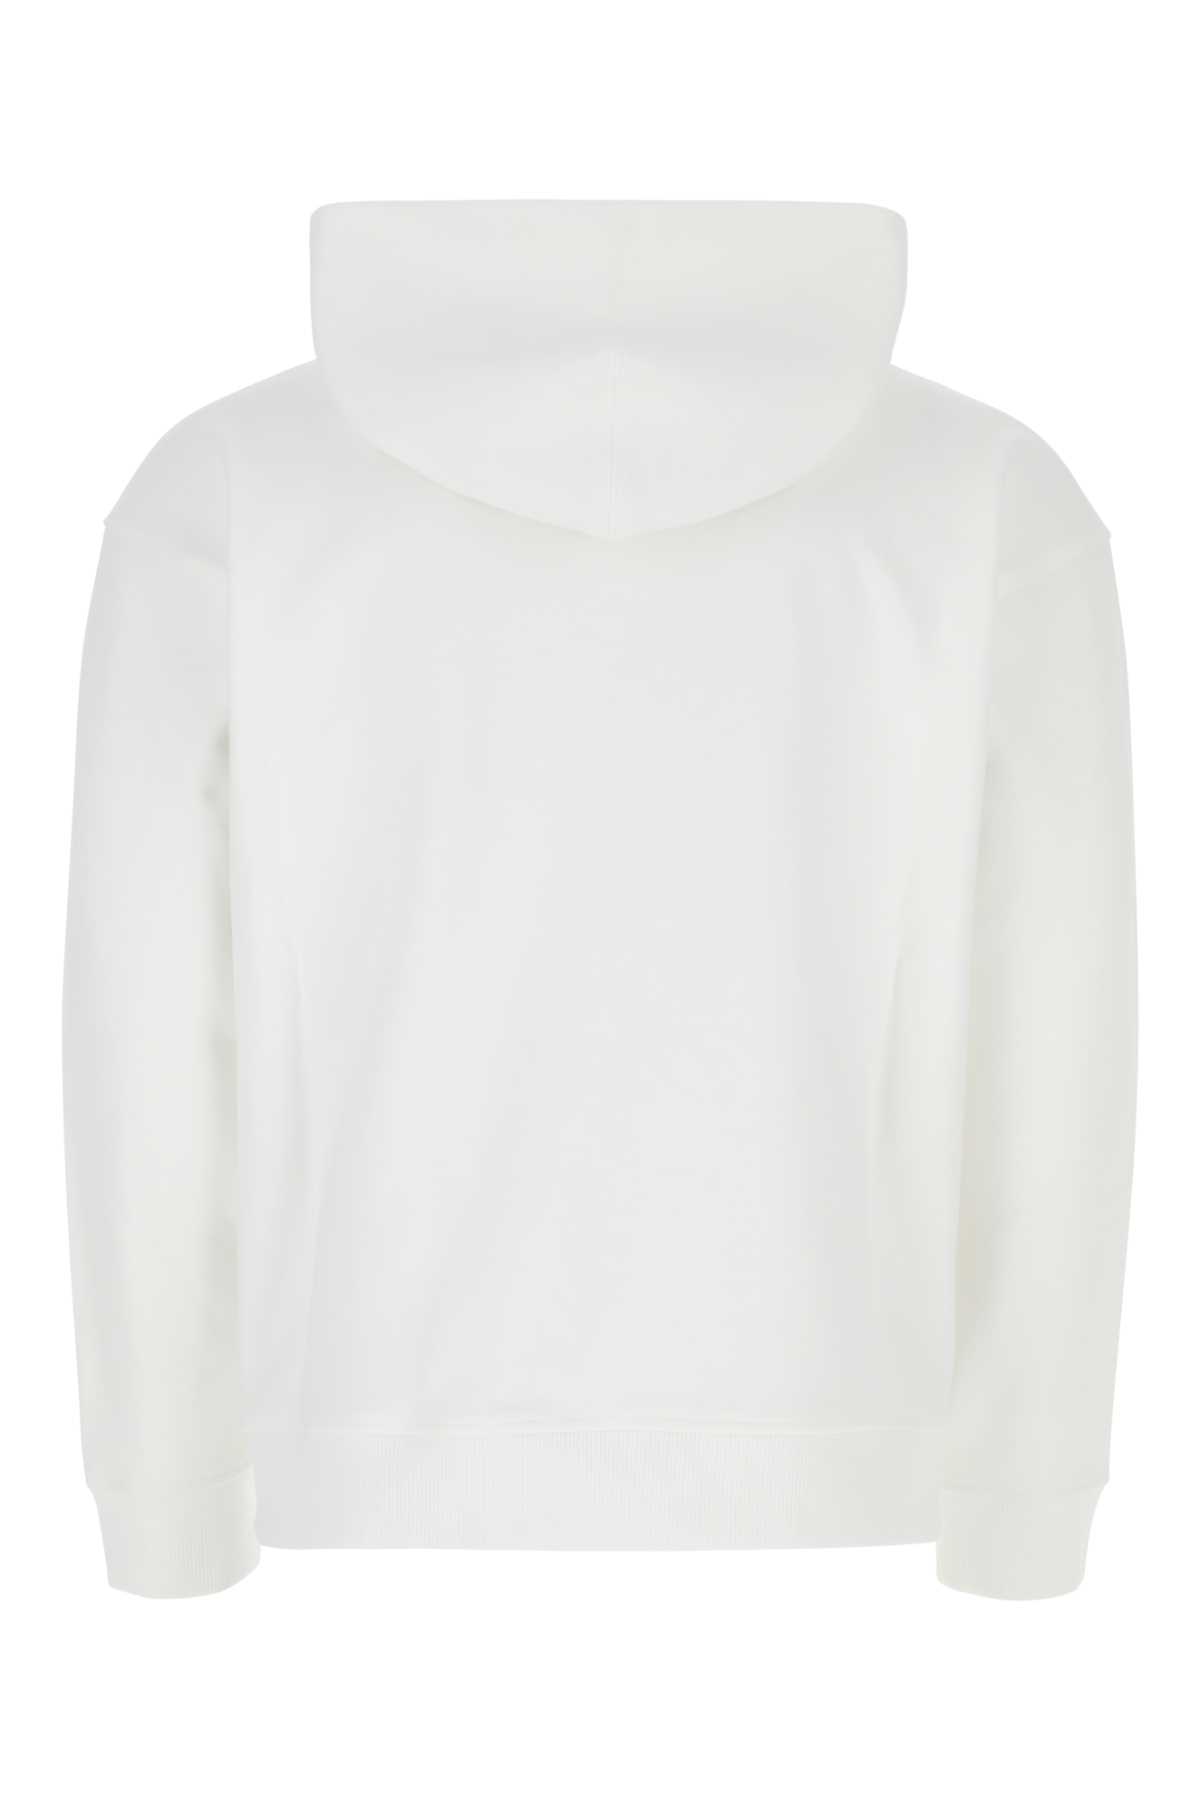 Valentino White Cotton Sweatshirt In Yt4